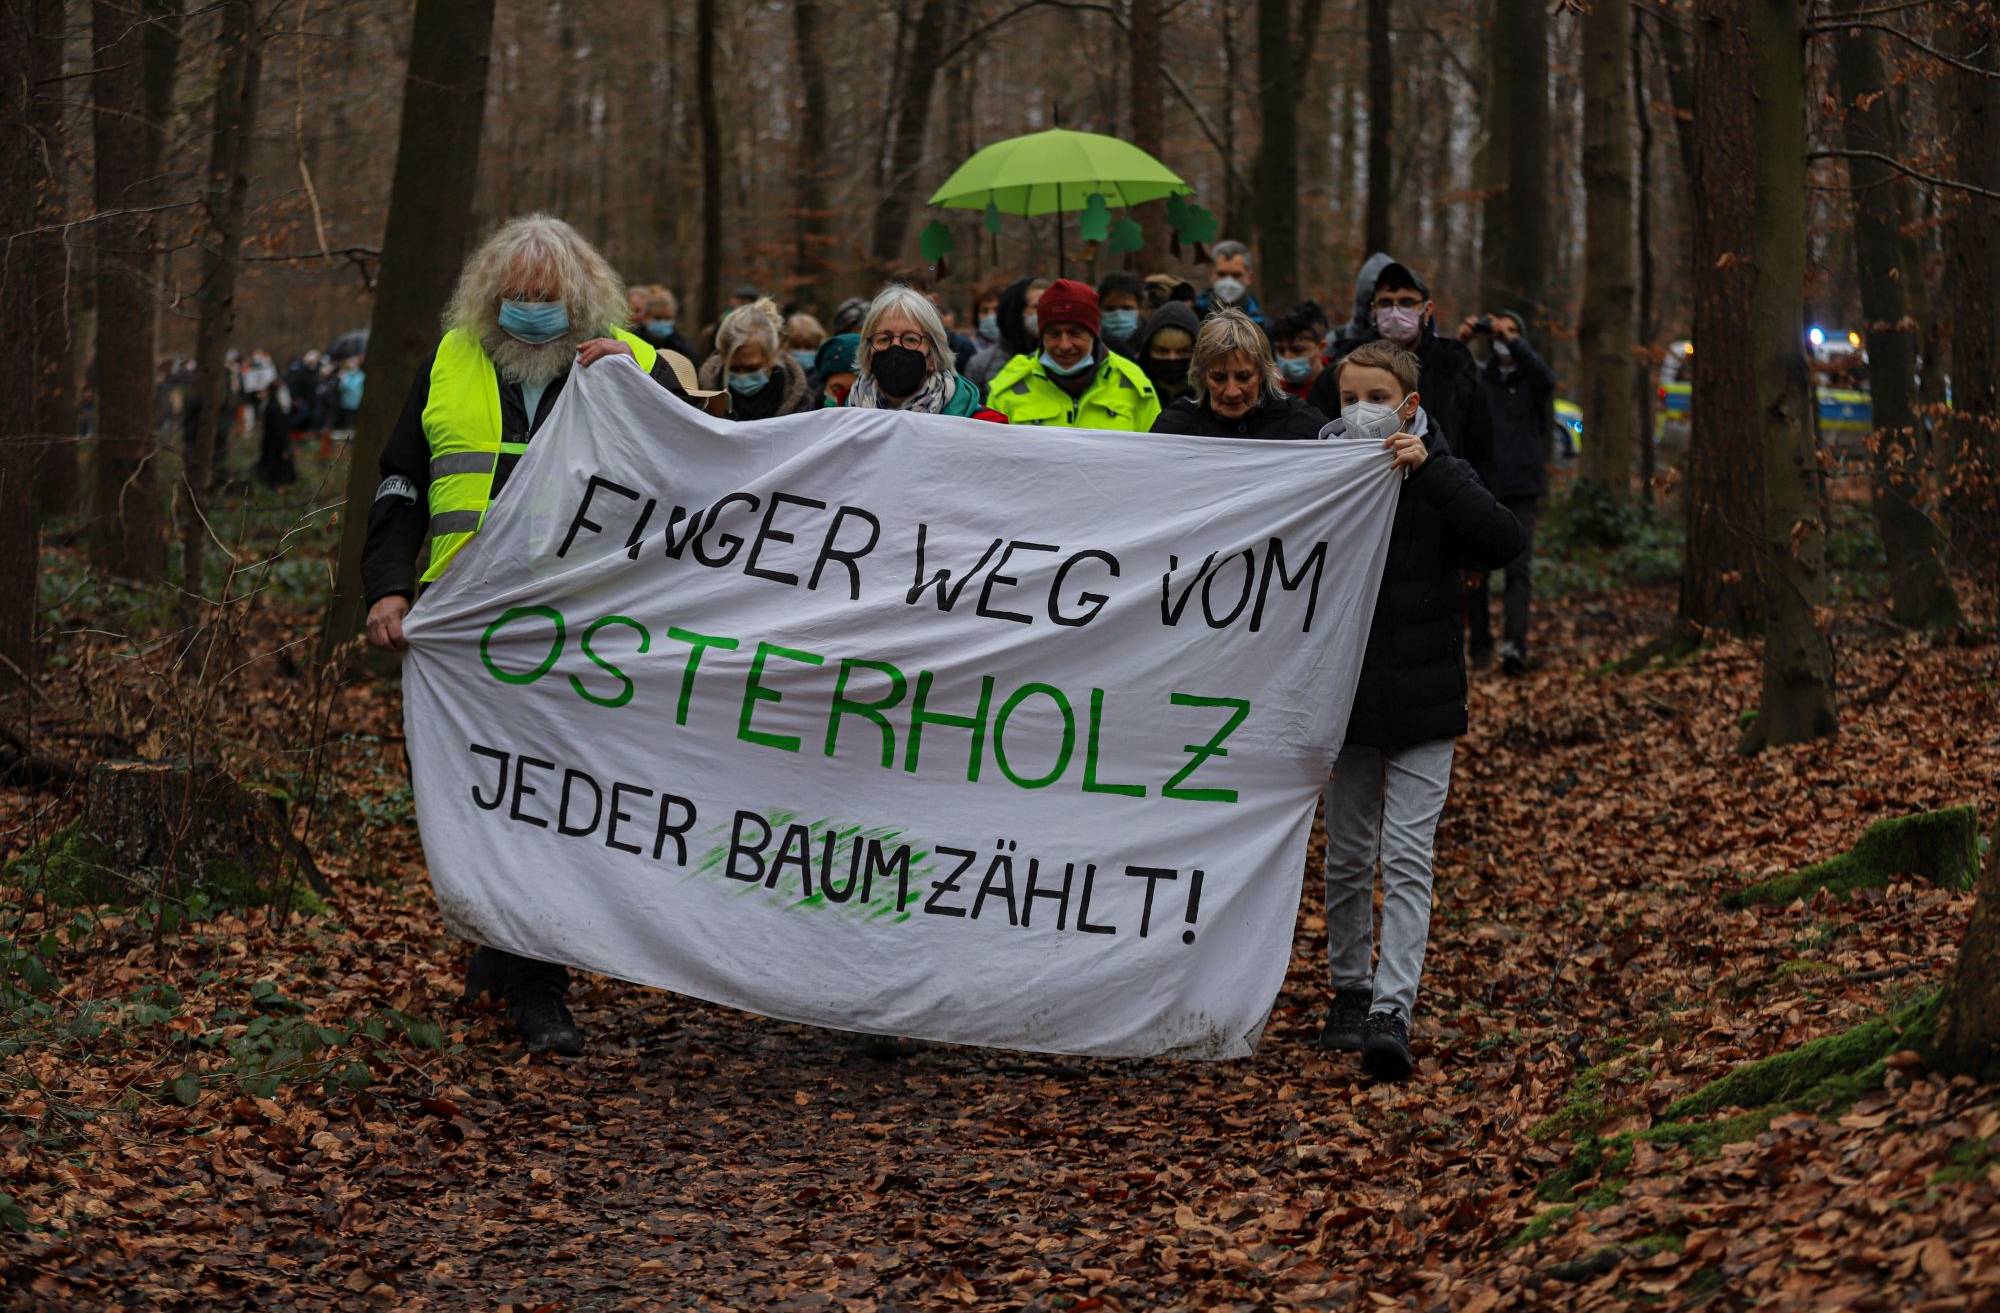  Bild von der Demo Anfang Januar im Osterholz. 